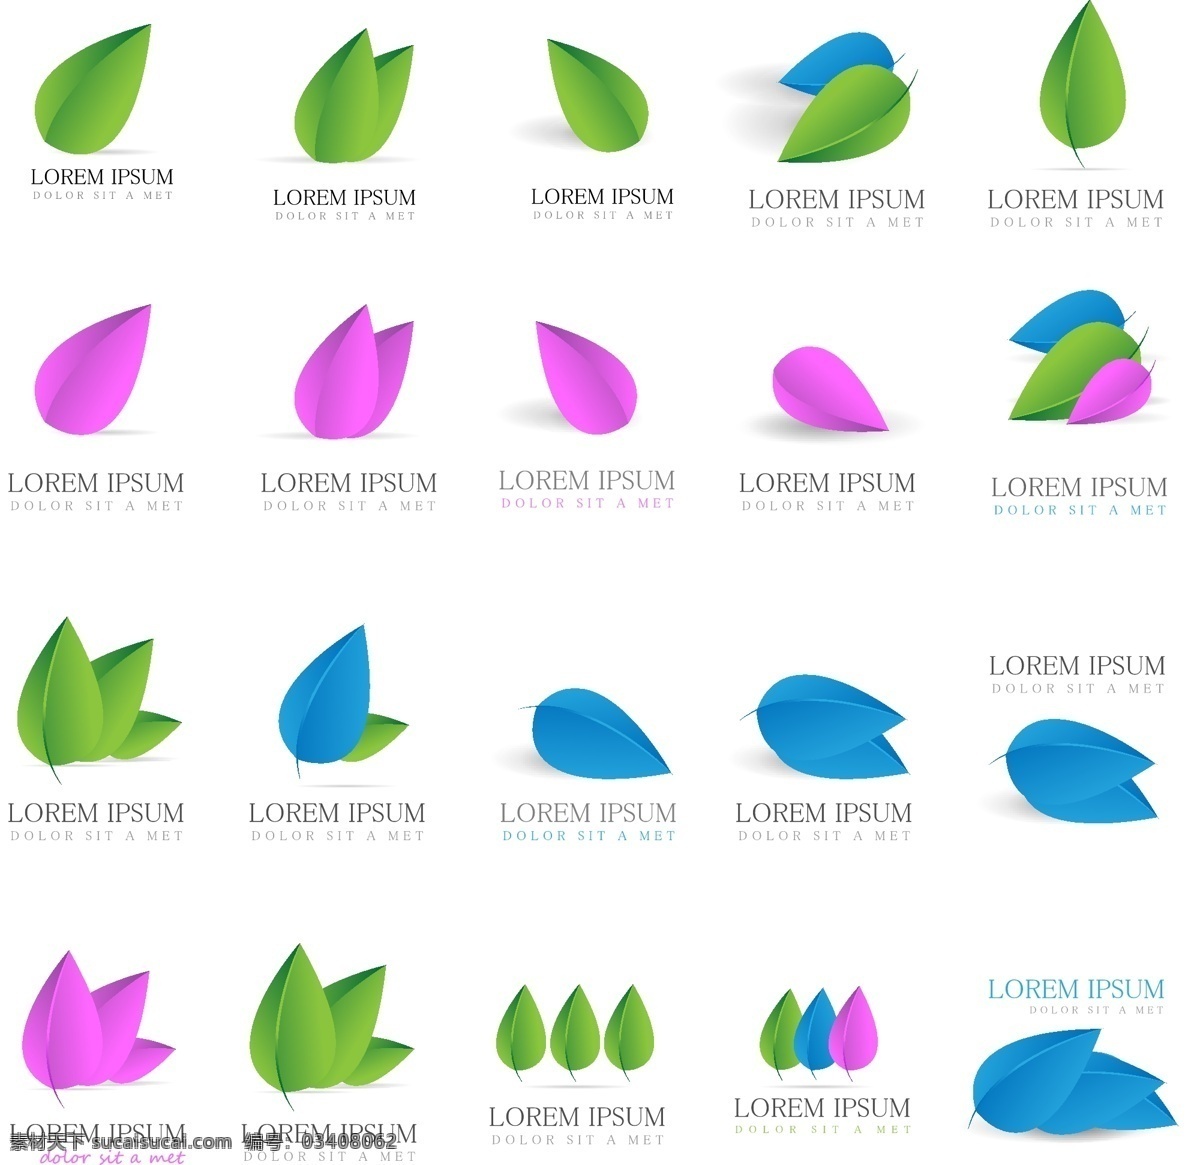 蓝色 矢量 商标 树叶 绿色 叶子 装饰图案 设计元素 免费图标 源文件